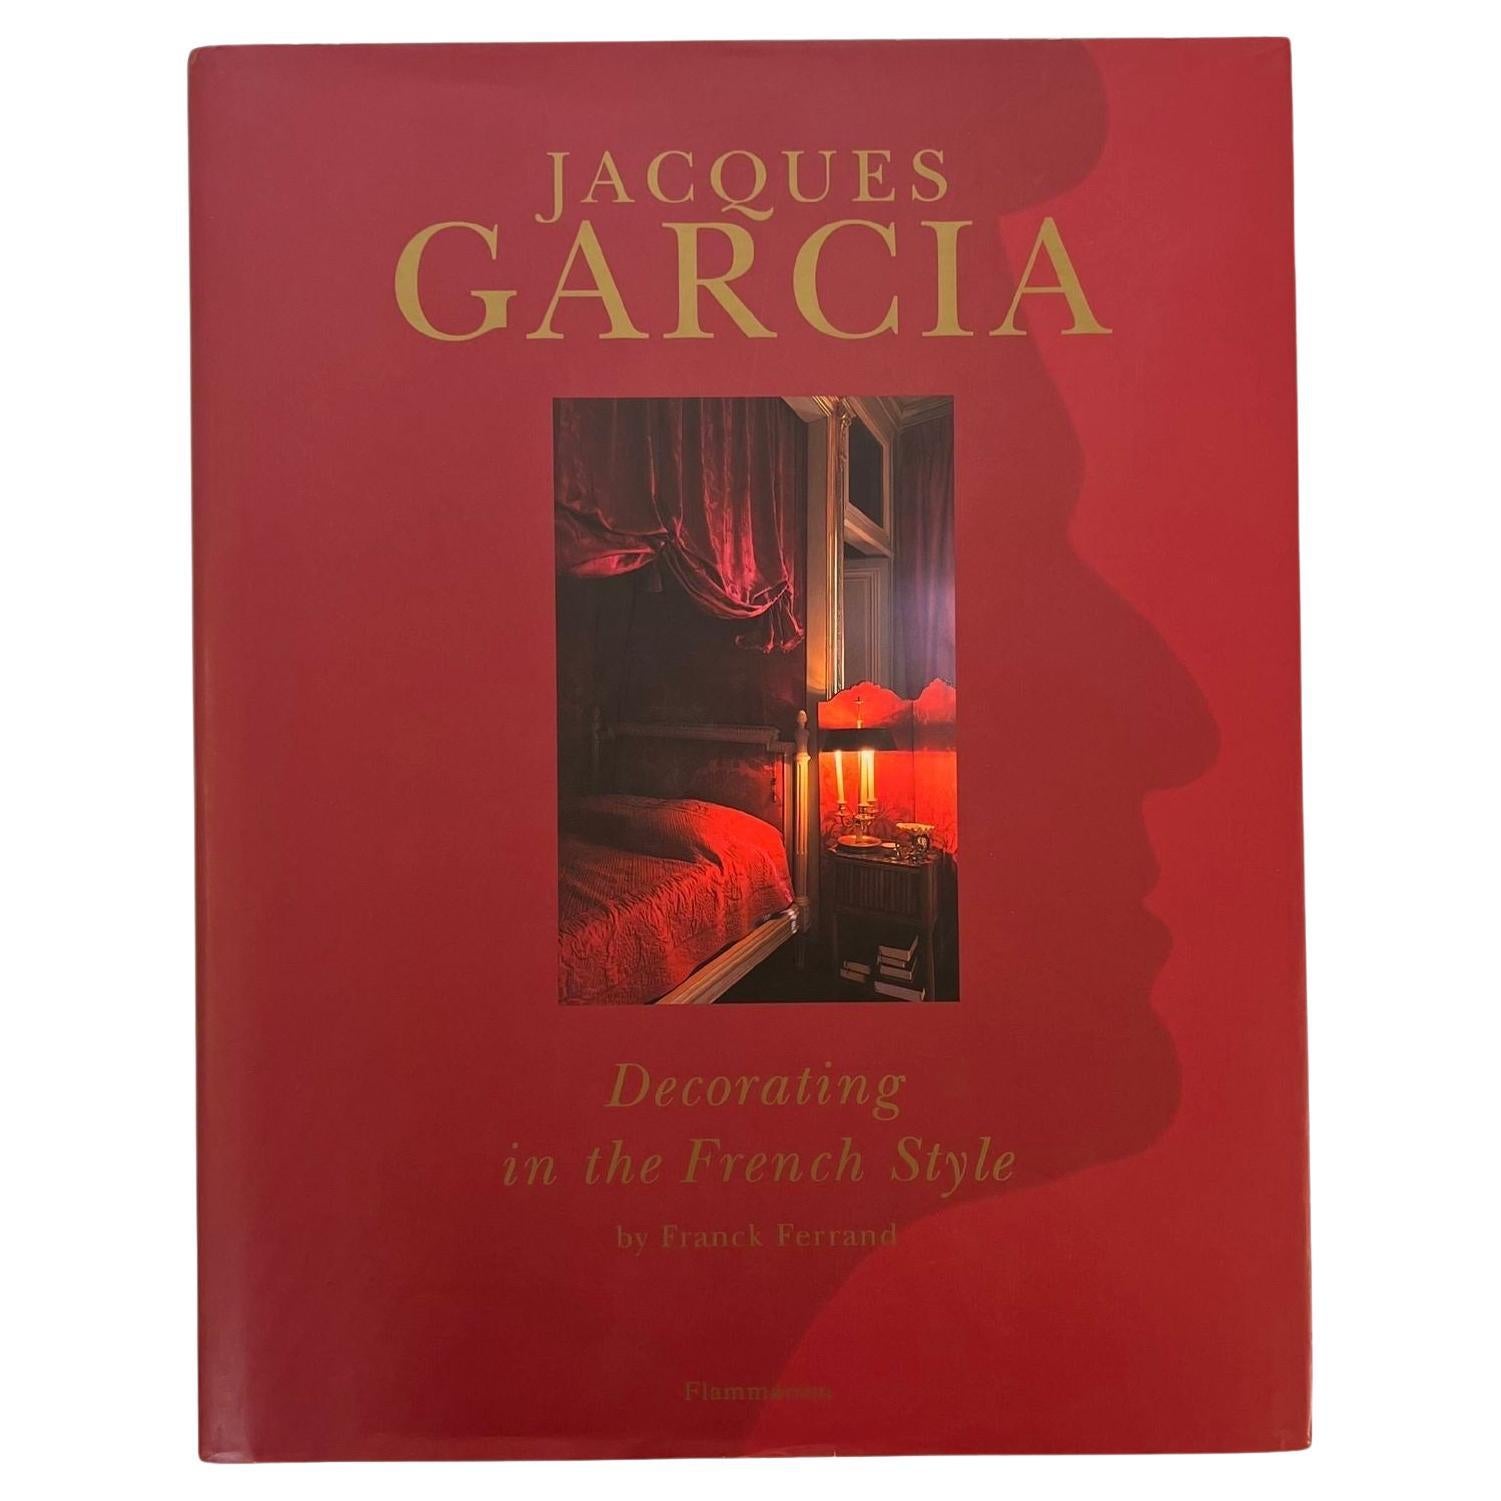 Dekoration im französischen Stil von Jacques Garcia, Buch von Franck Ferrand, 1999